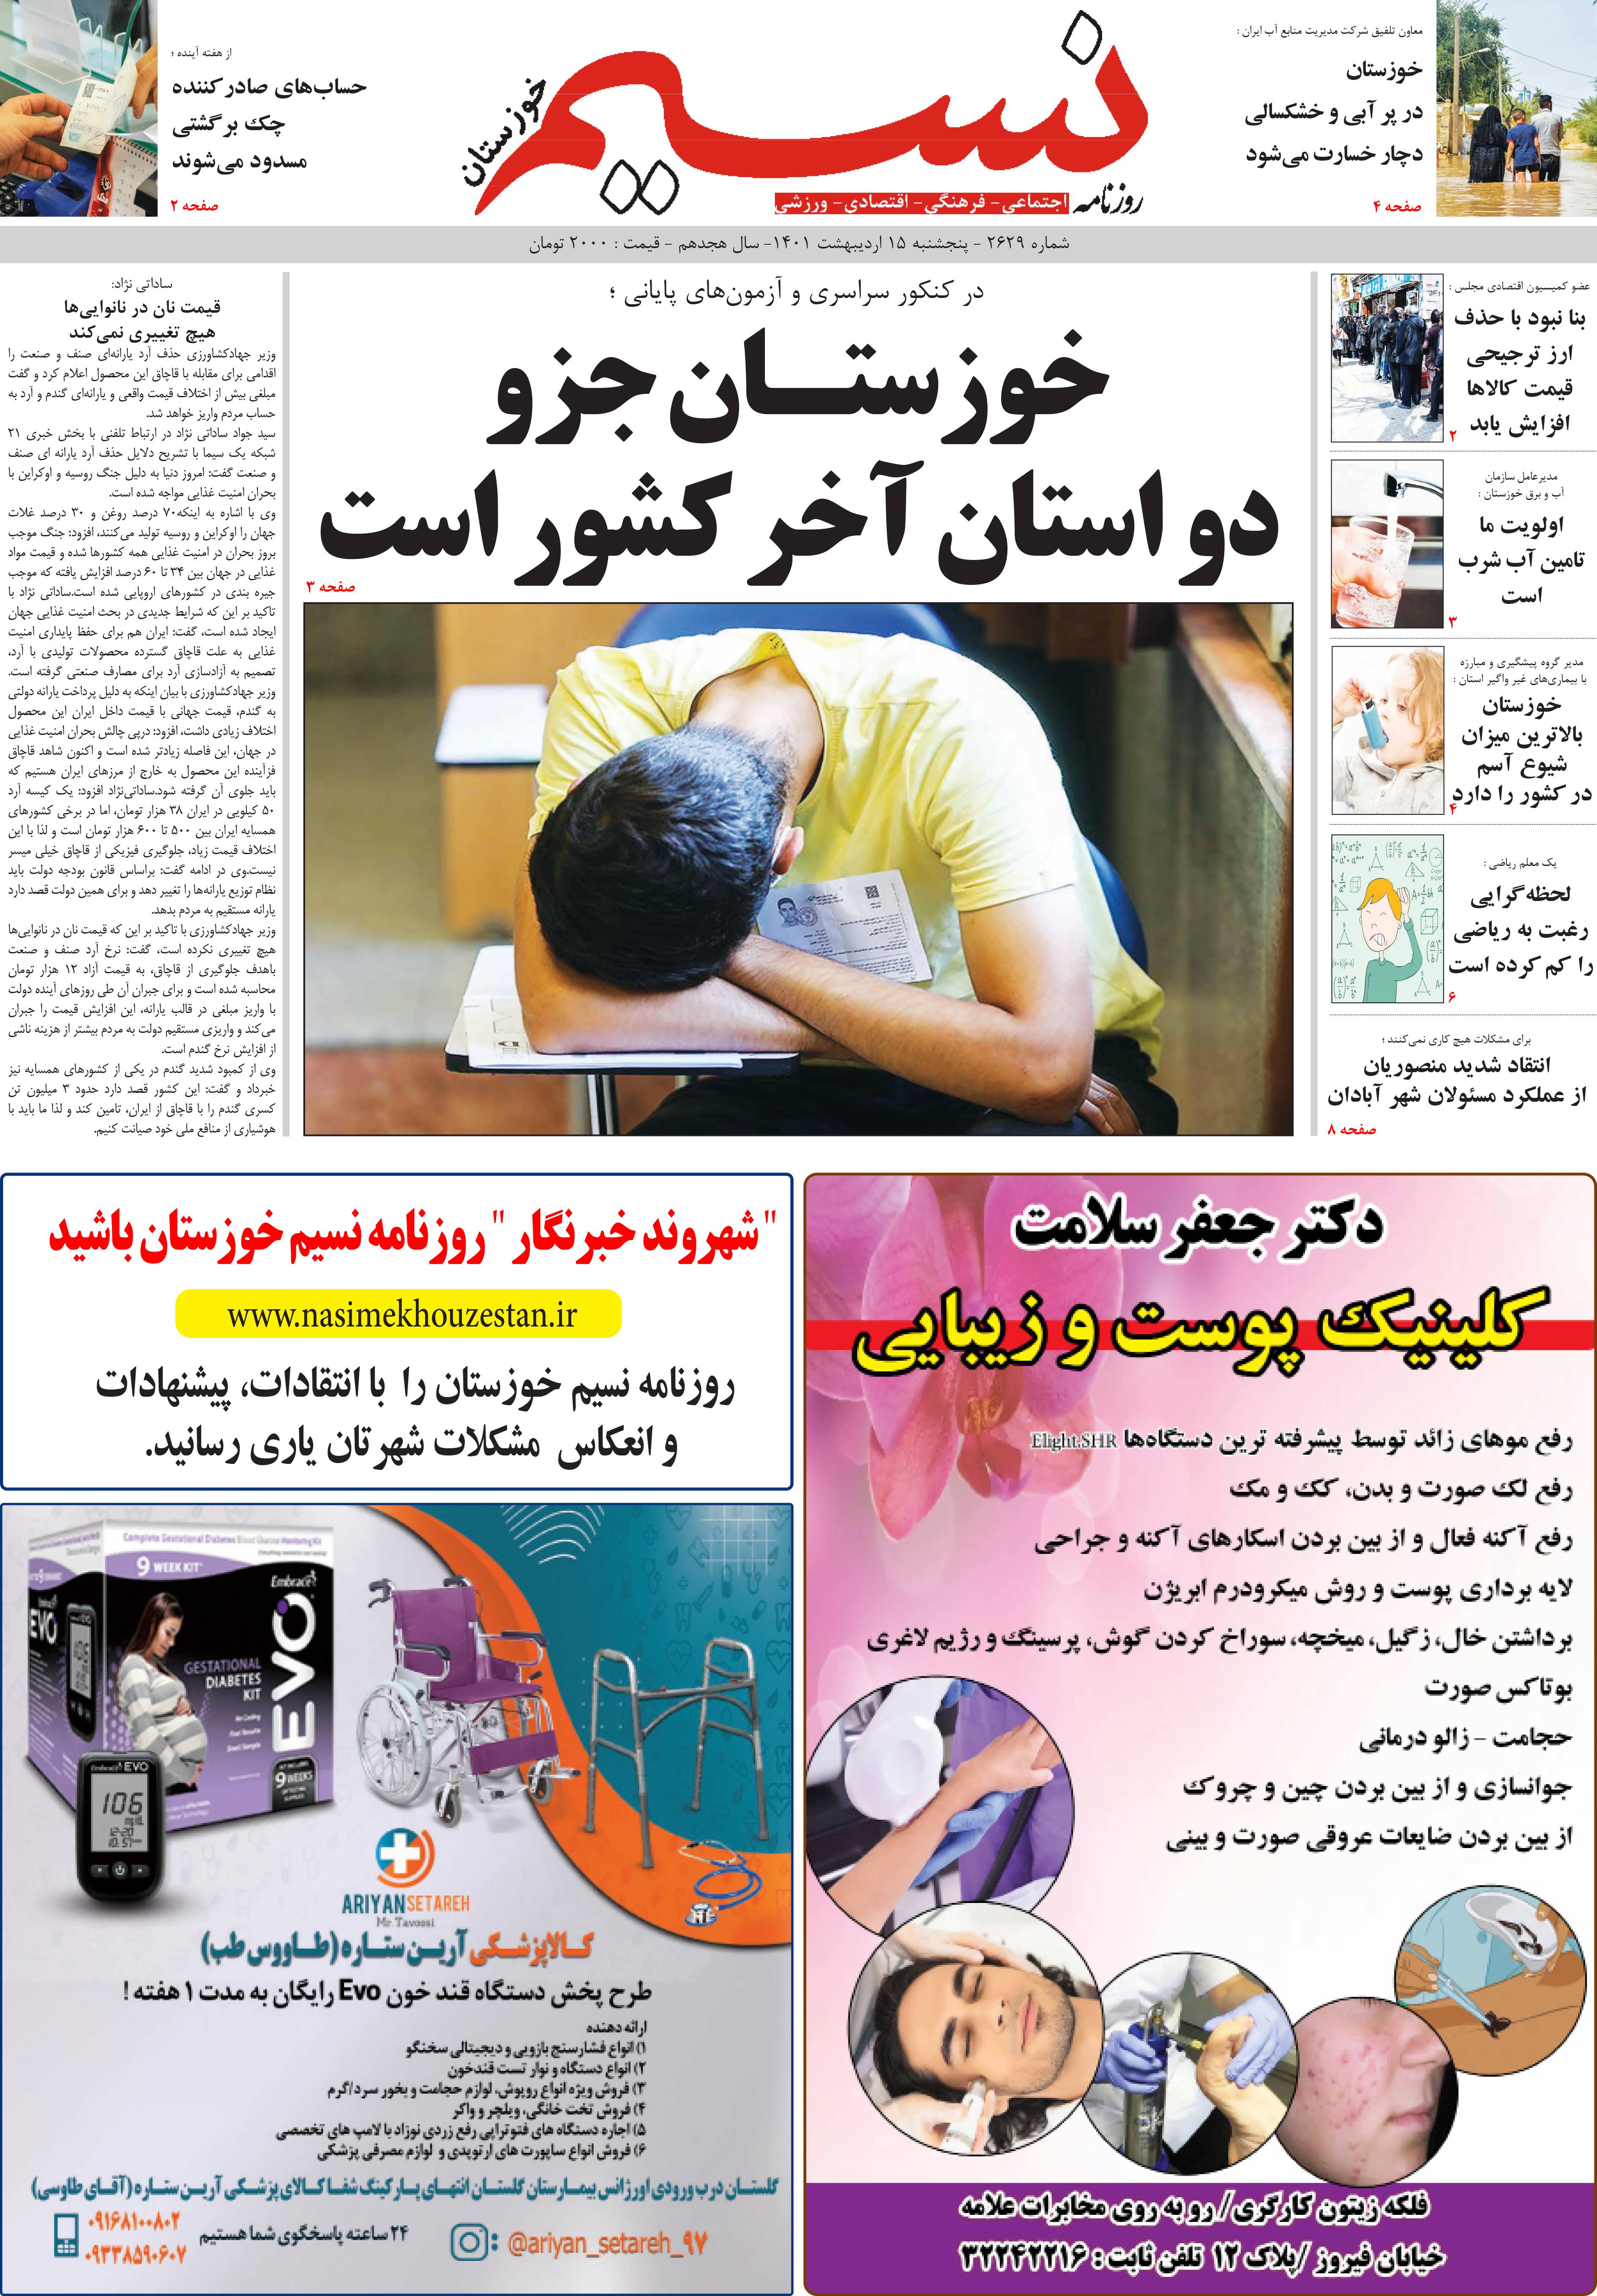 صفحه اصلی روزنامه نسیم شماره 2629 